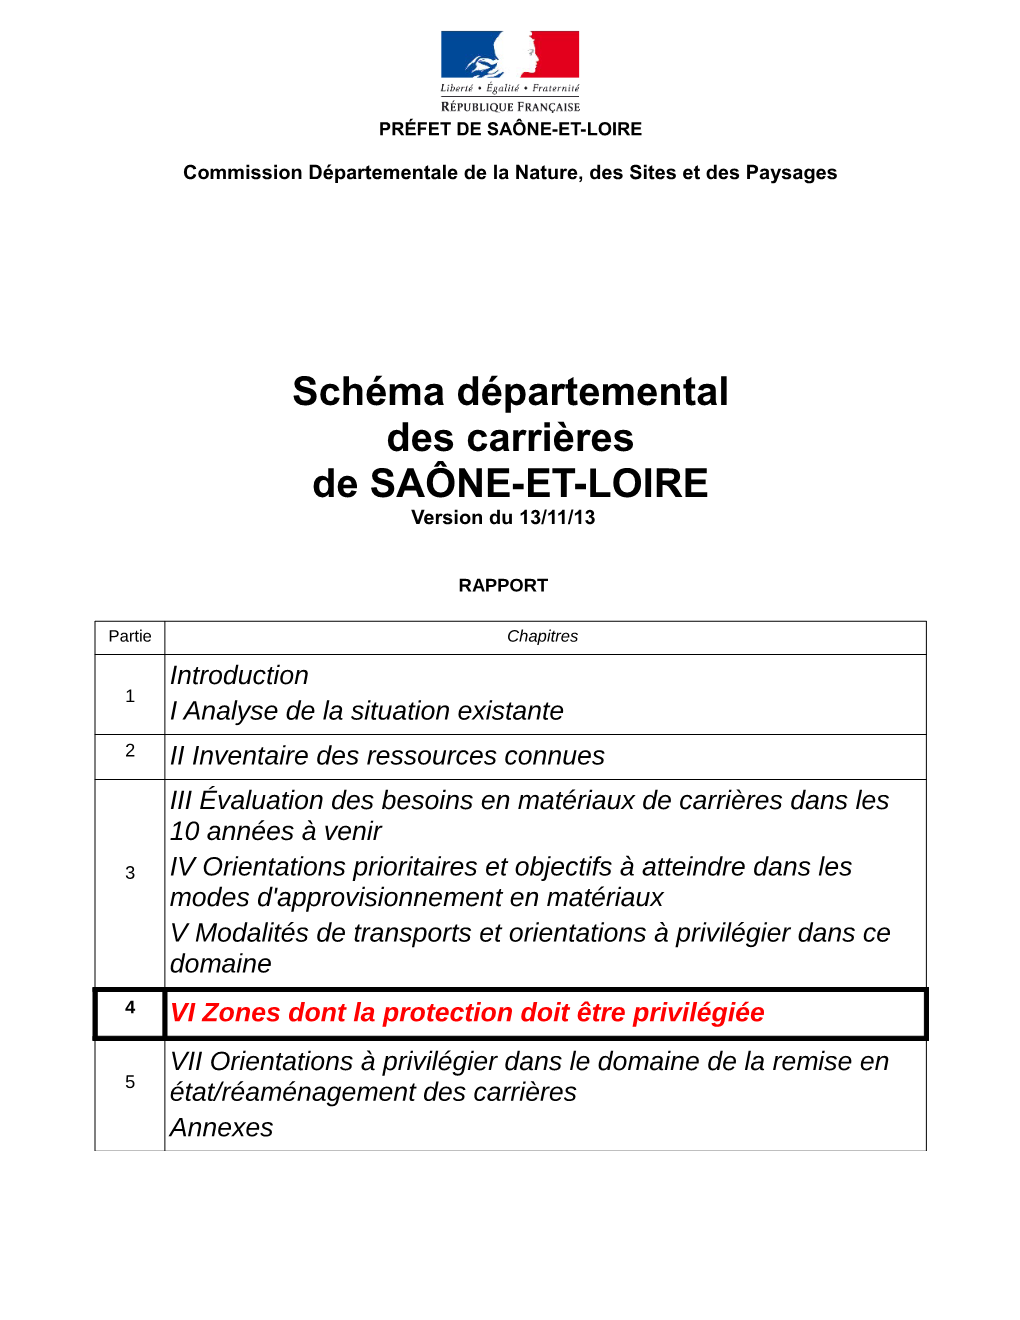 Schéma Départemental Des Carrières De SAÔNE-ET-LOIRE Version Du 13/11/13